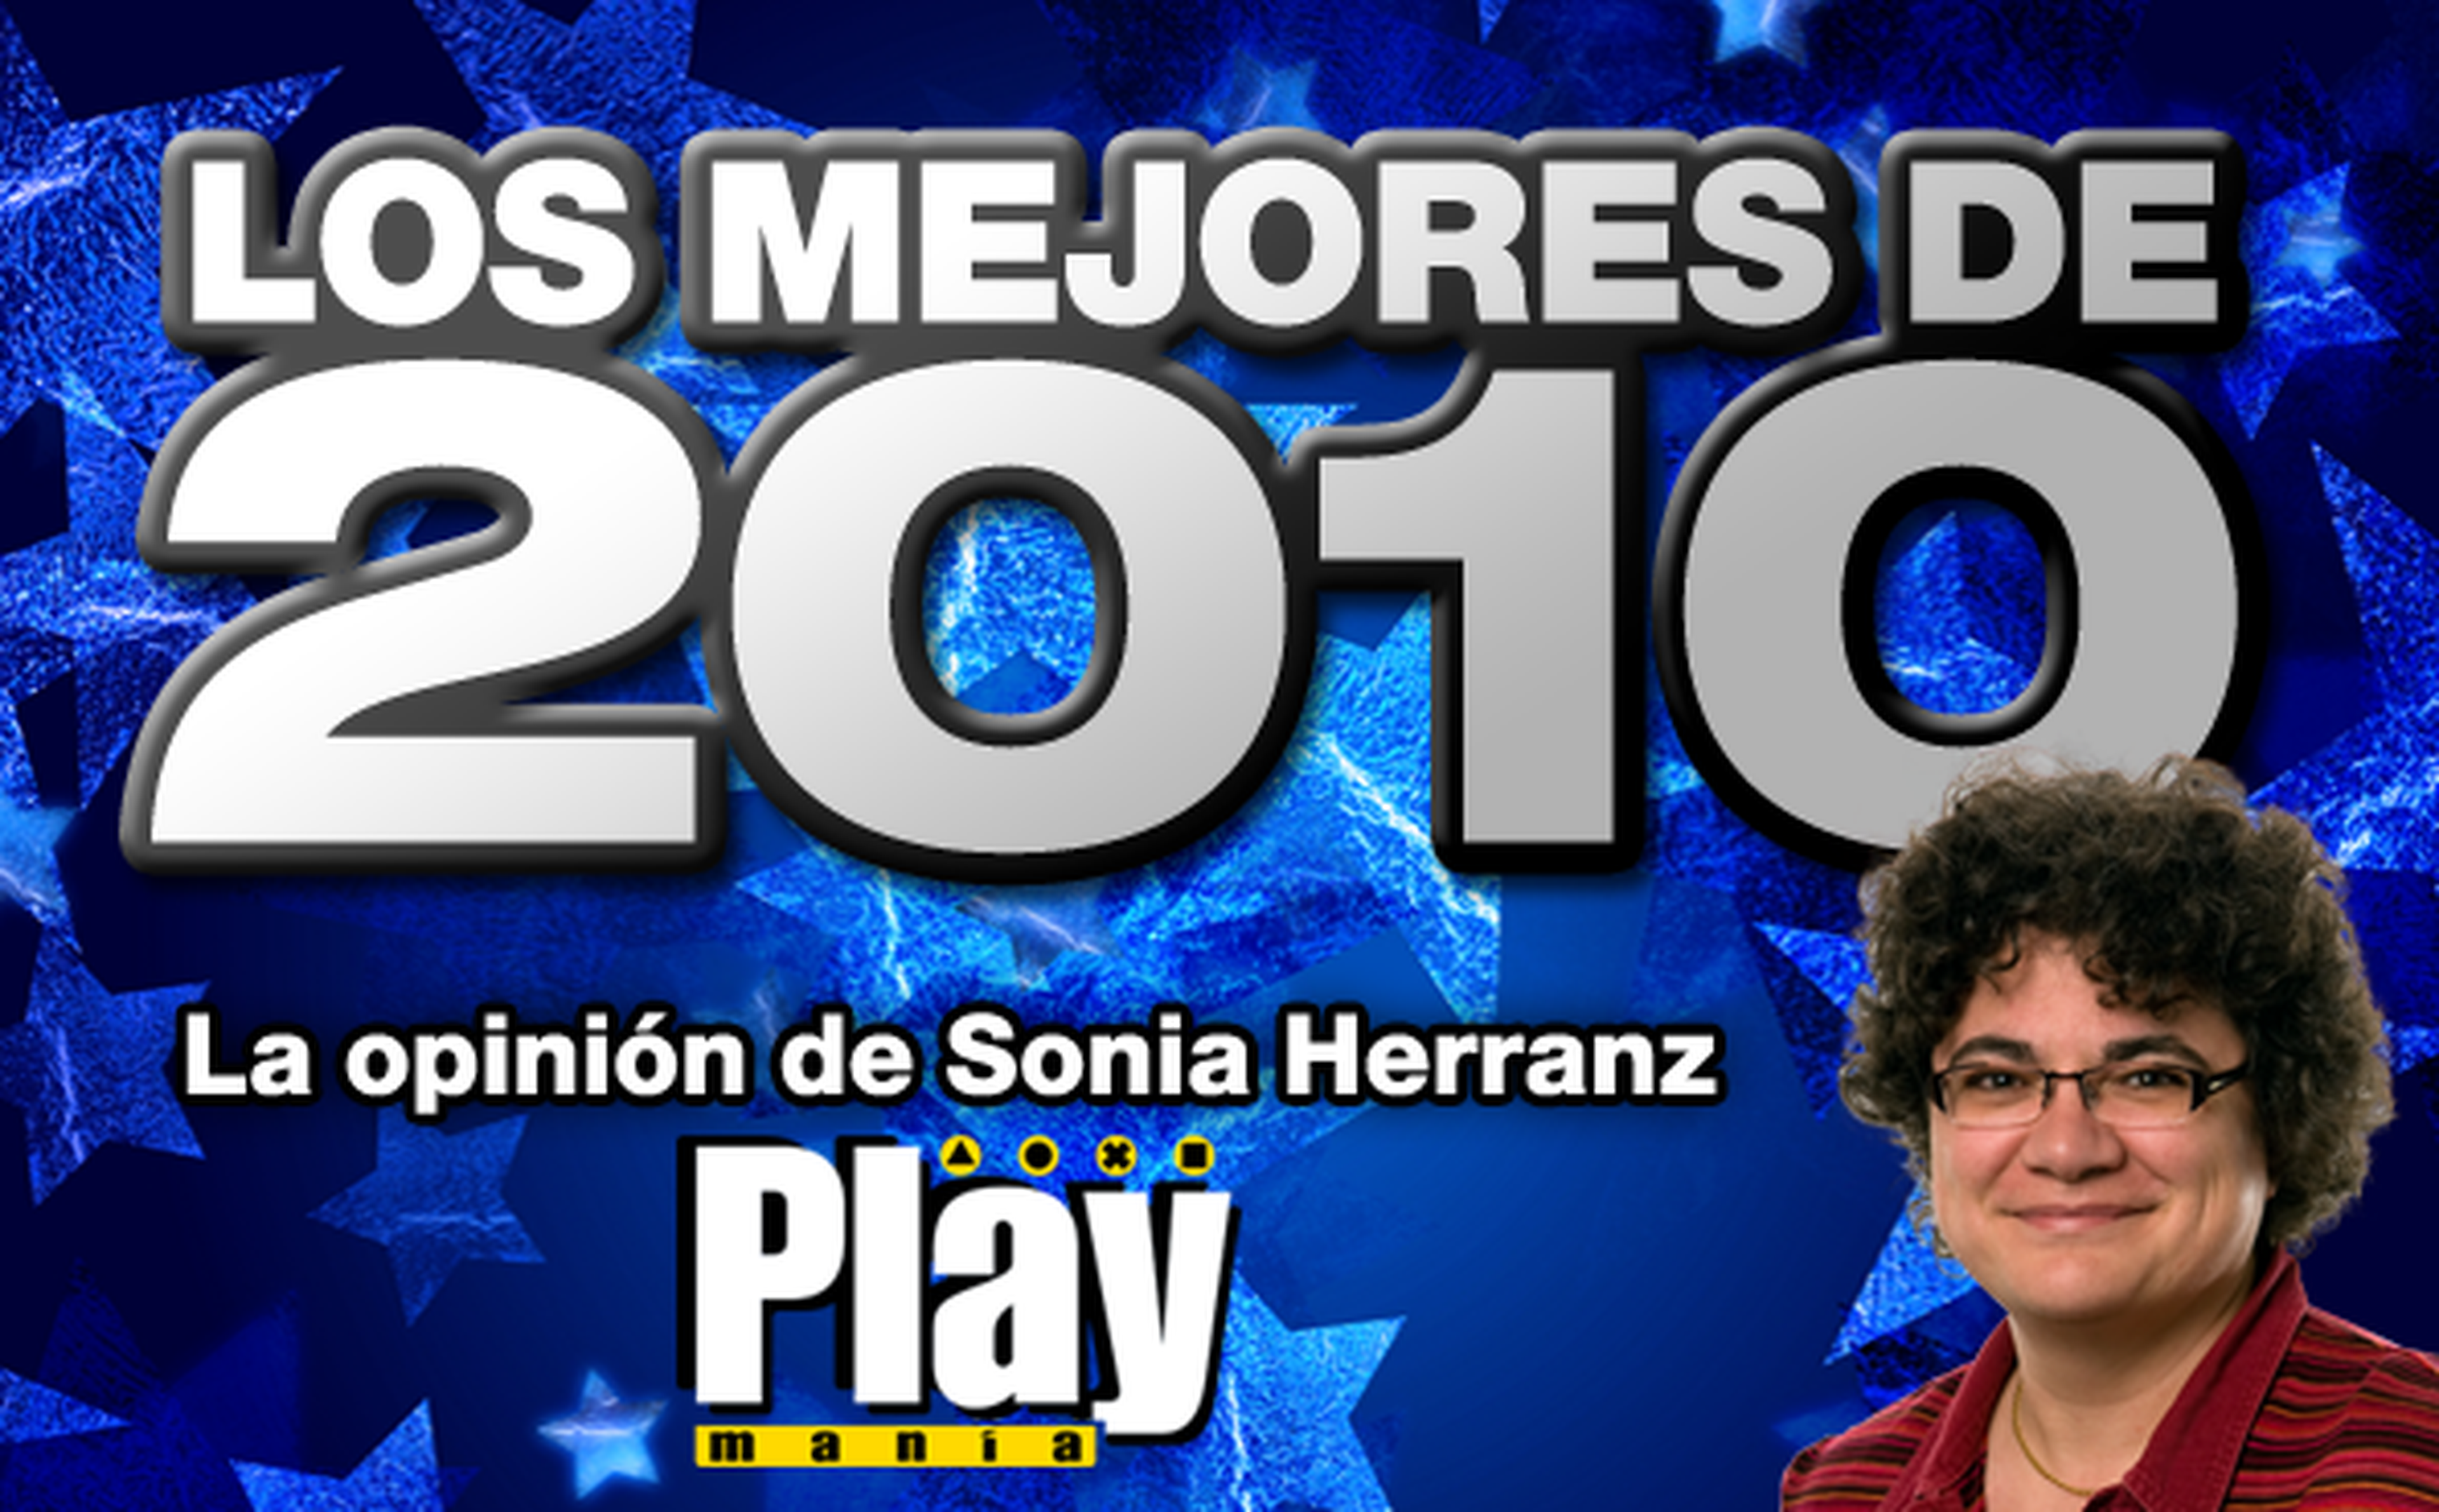 Los mejores de 2010: Sonia Herranz